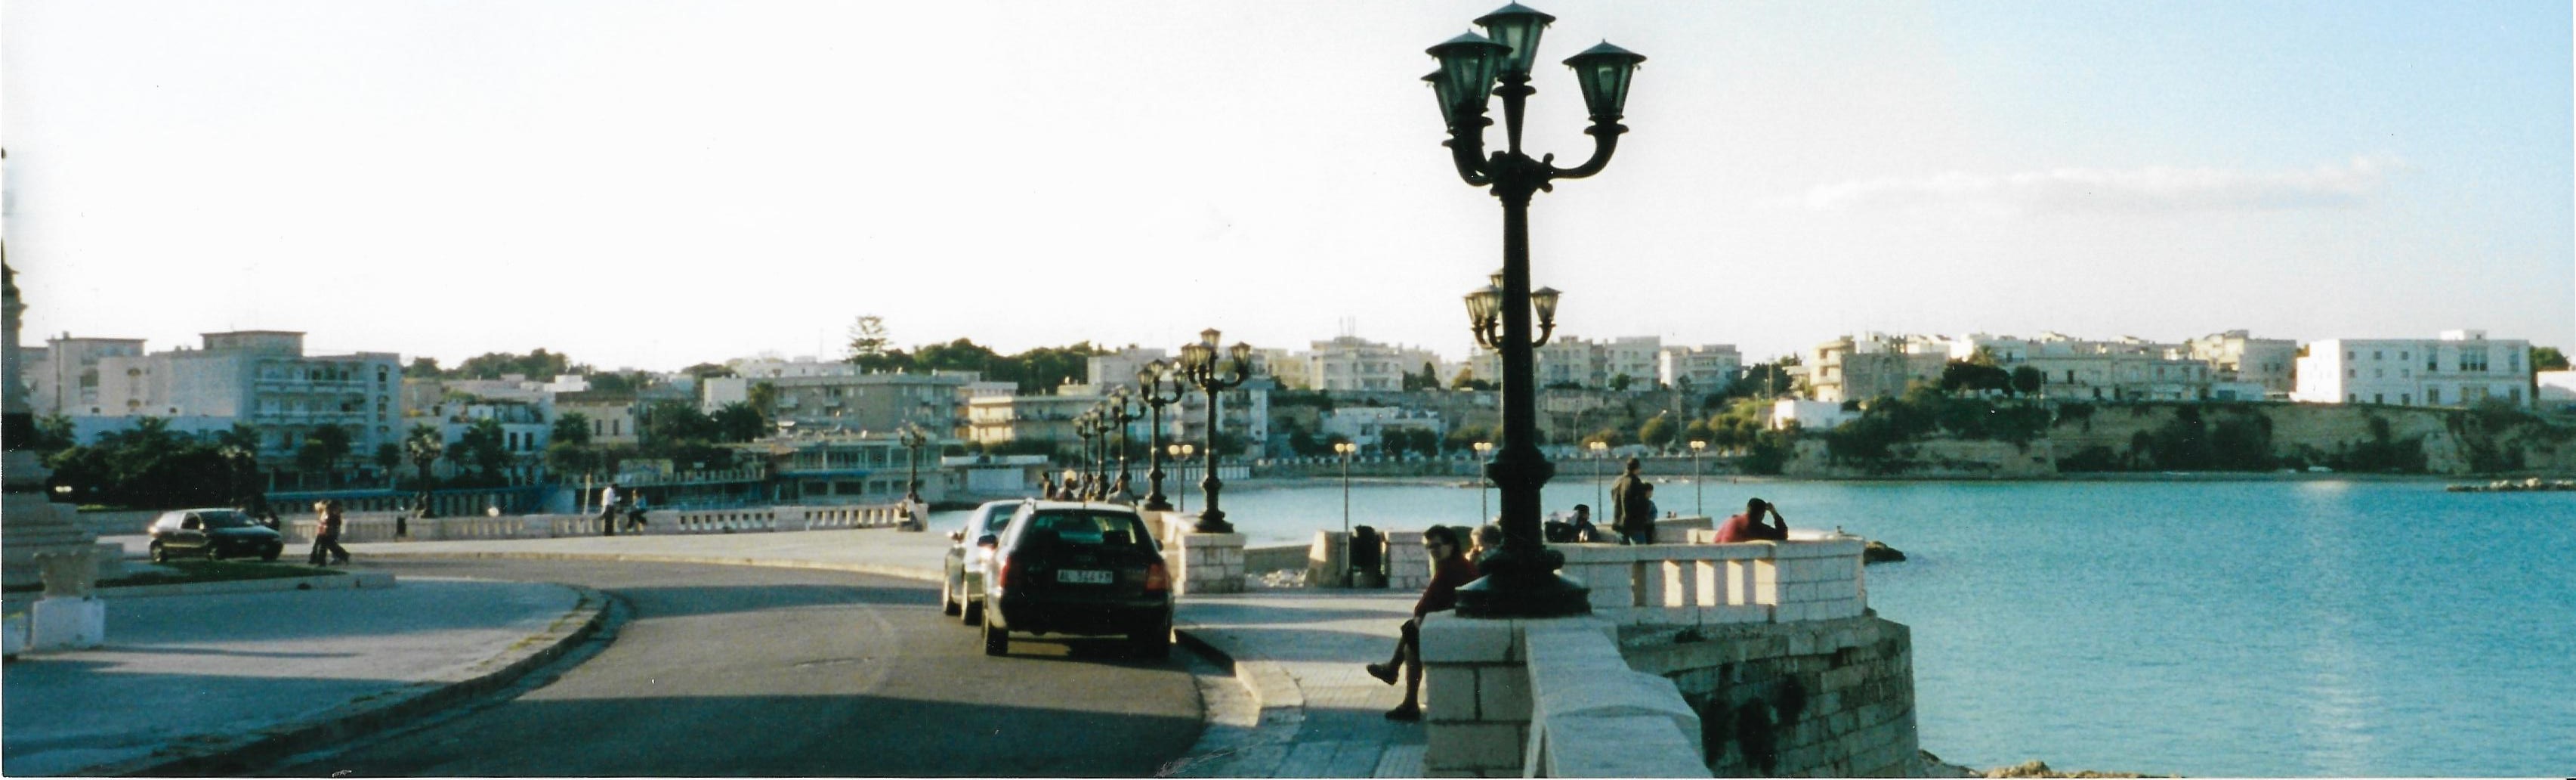 Along the quay in Otranto